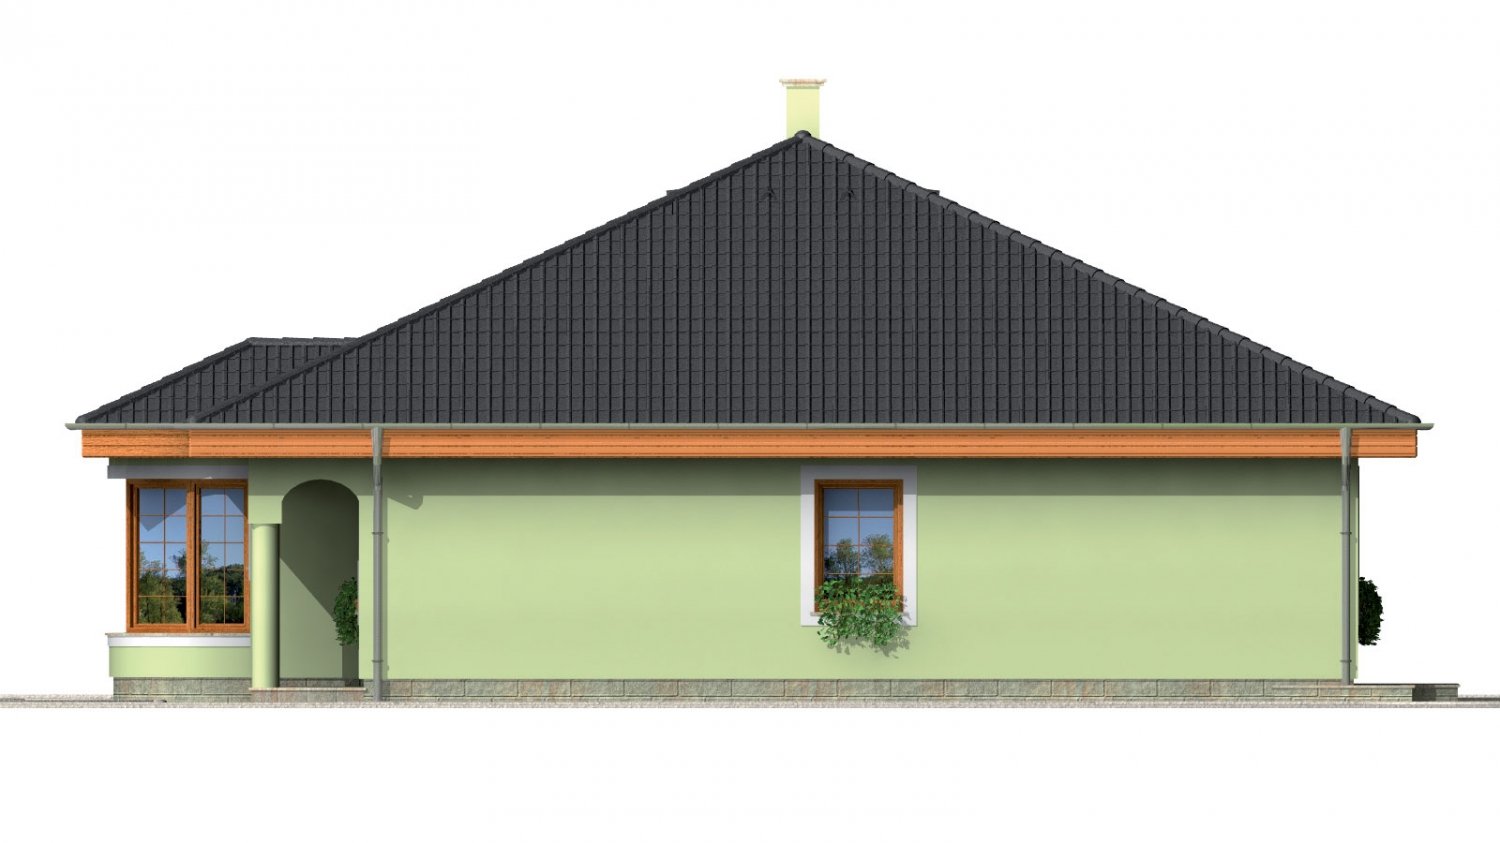 Zrkadlový pohľad 4. - Přízemní projekt domu s krytou terasou a obloukovým jídelním koutem.